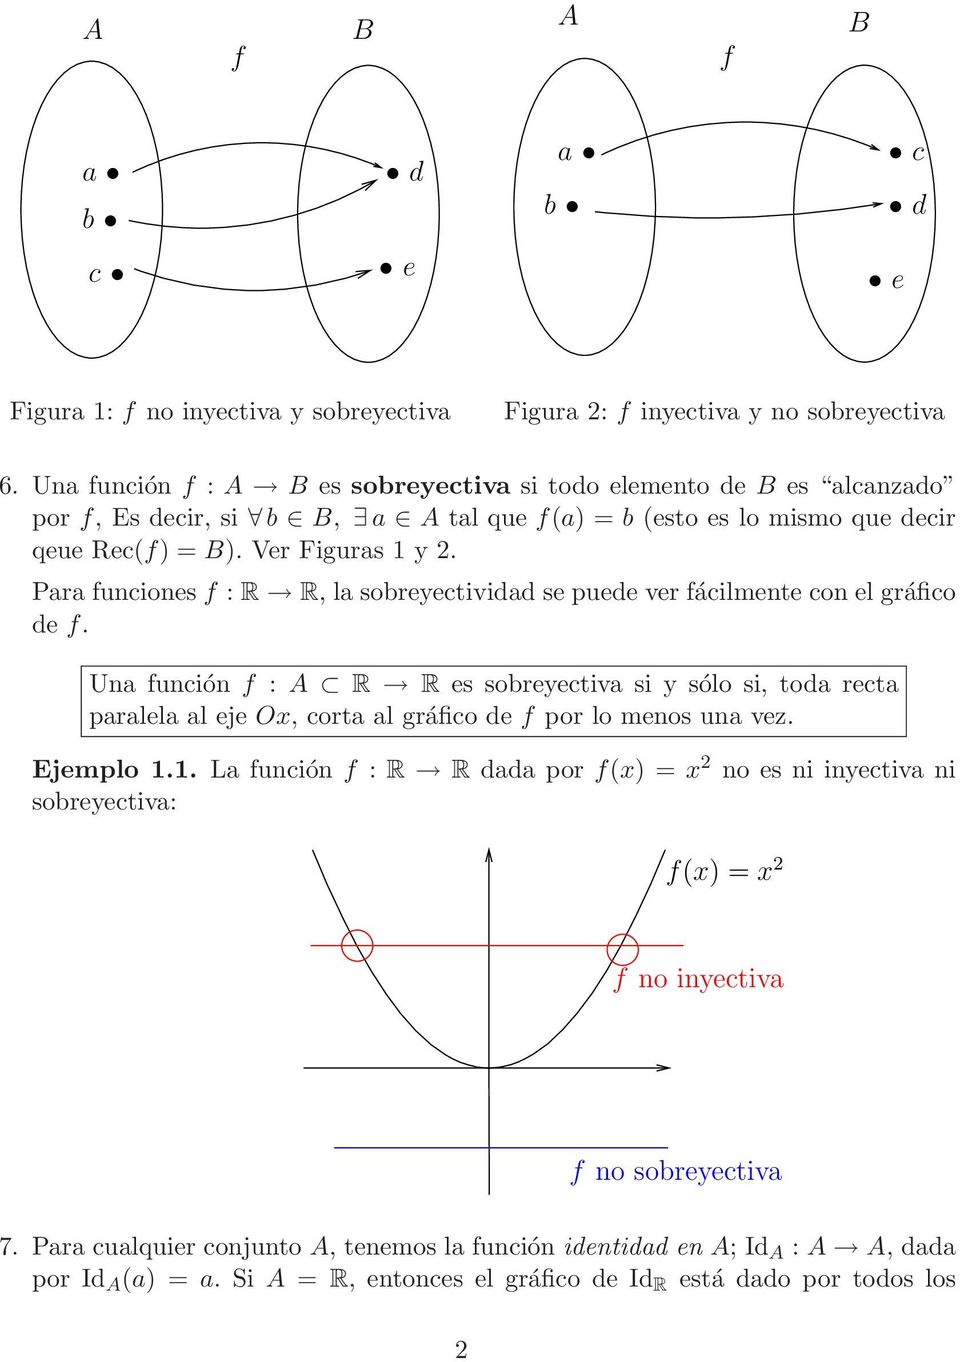 Pr funciones f : R R, l sobreyectividd se puede ver fácilmente con el gráfico de f.